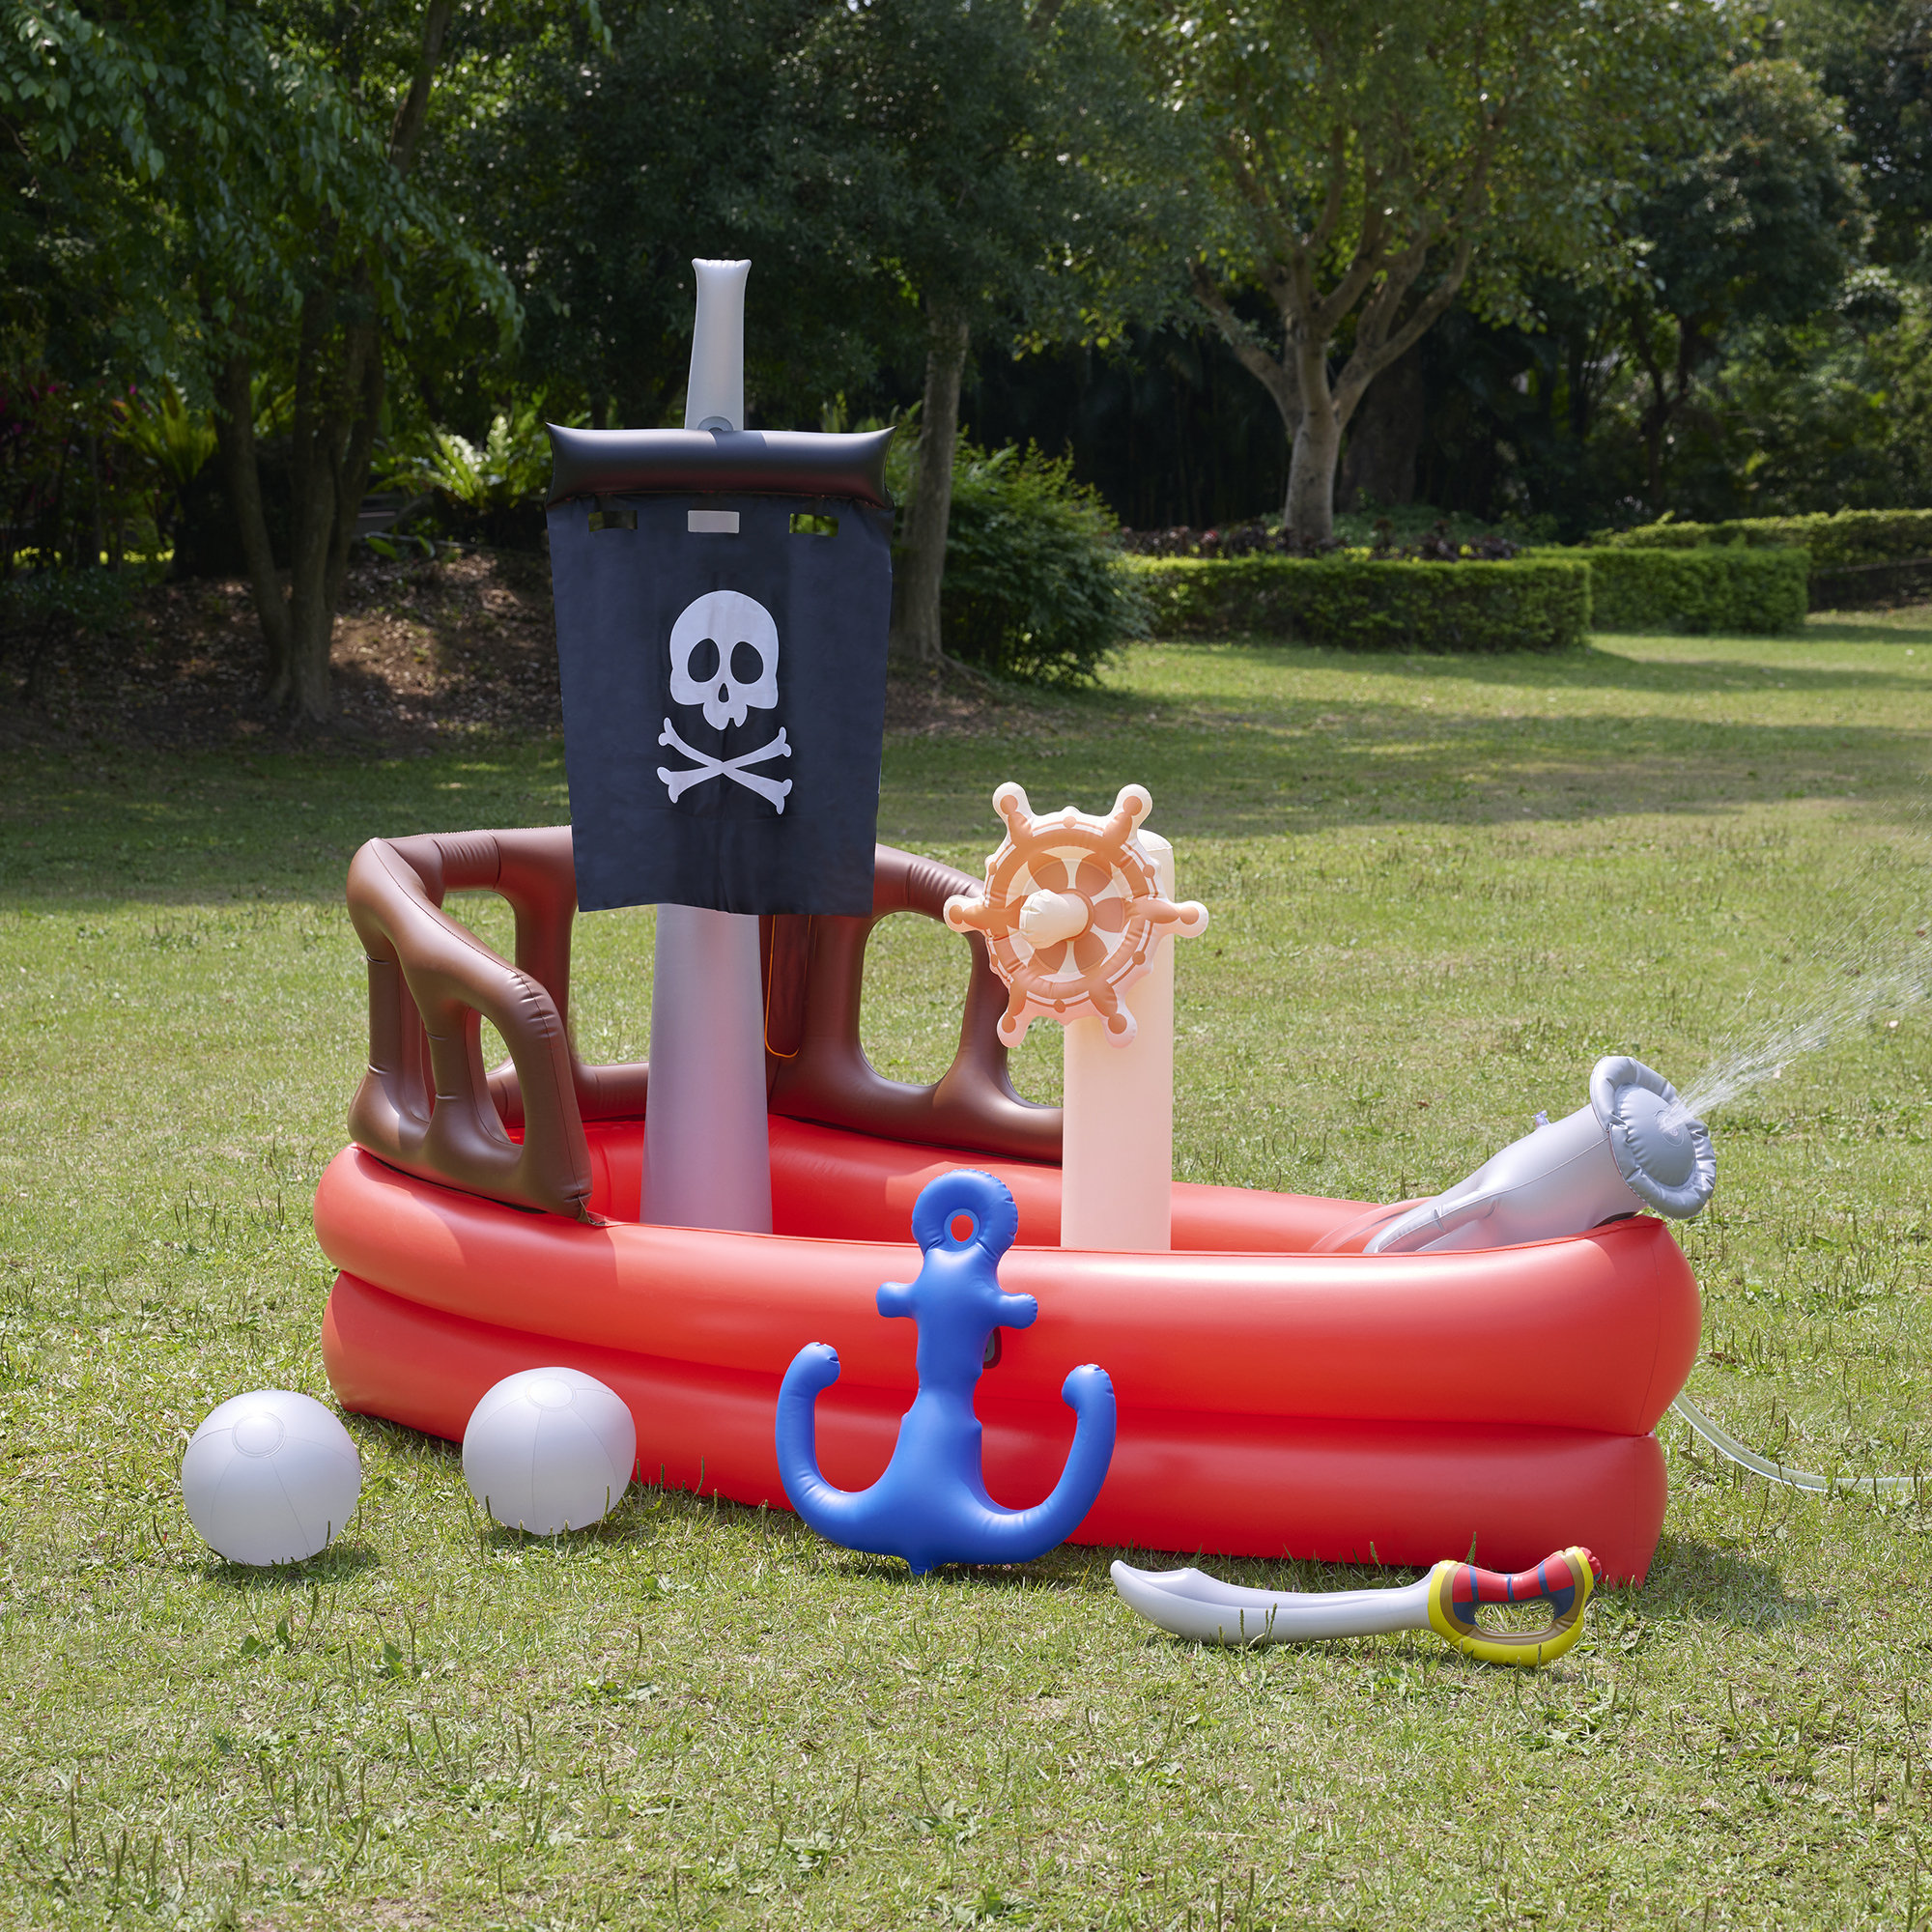 Teamson Kids Water Fun Pirate Boat Inflatable Kiddie Pool With Pump